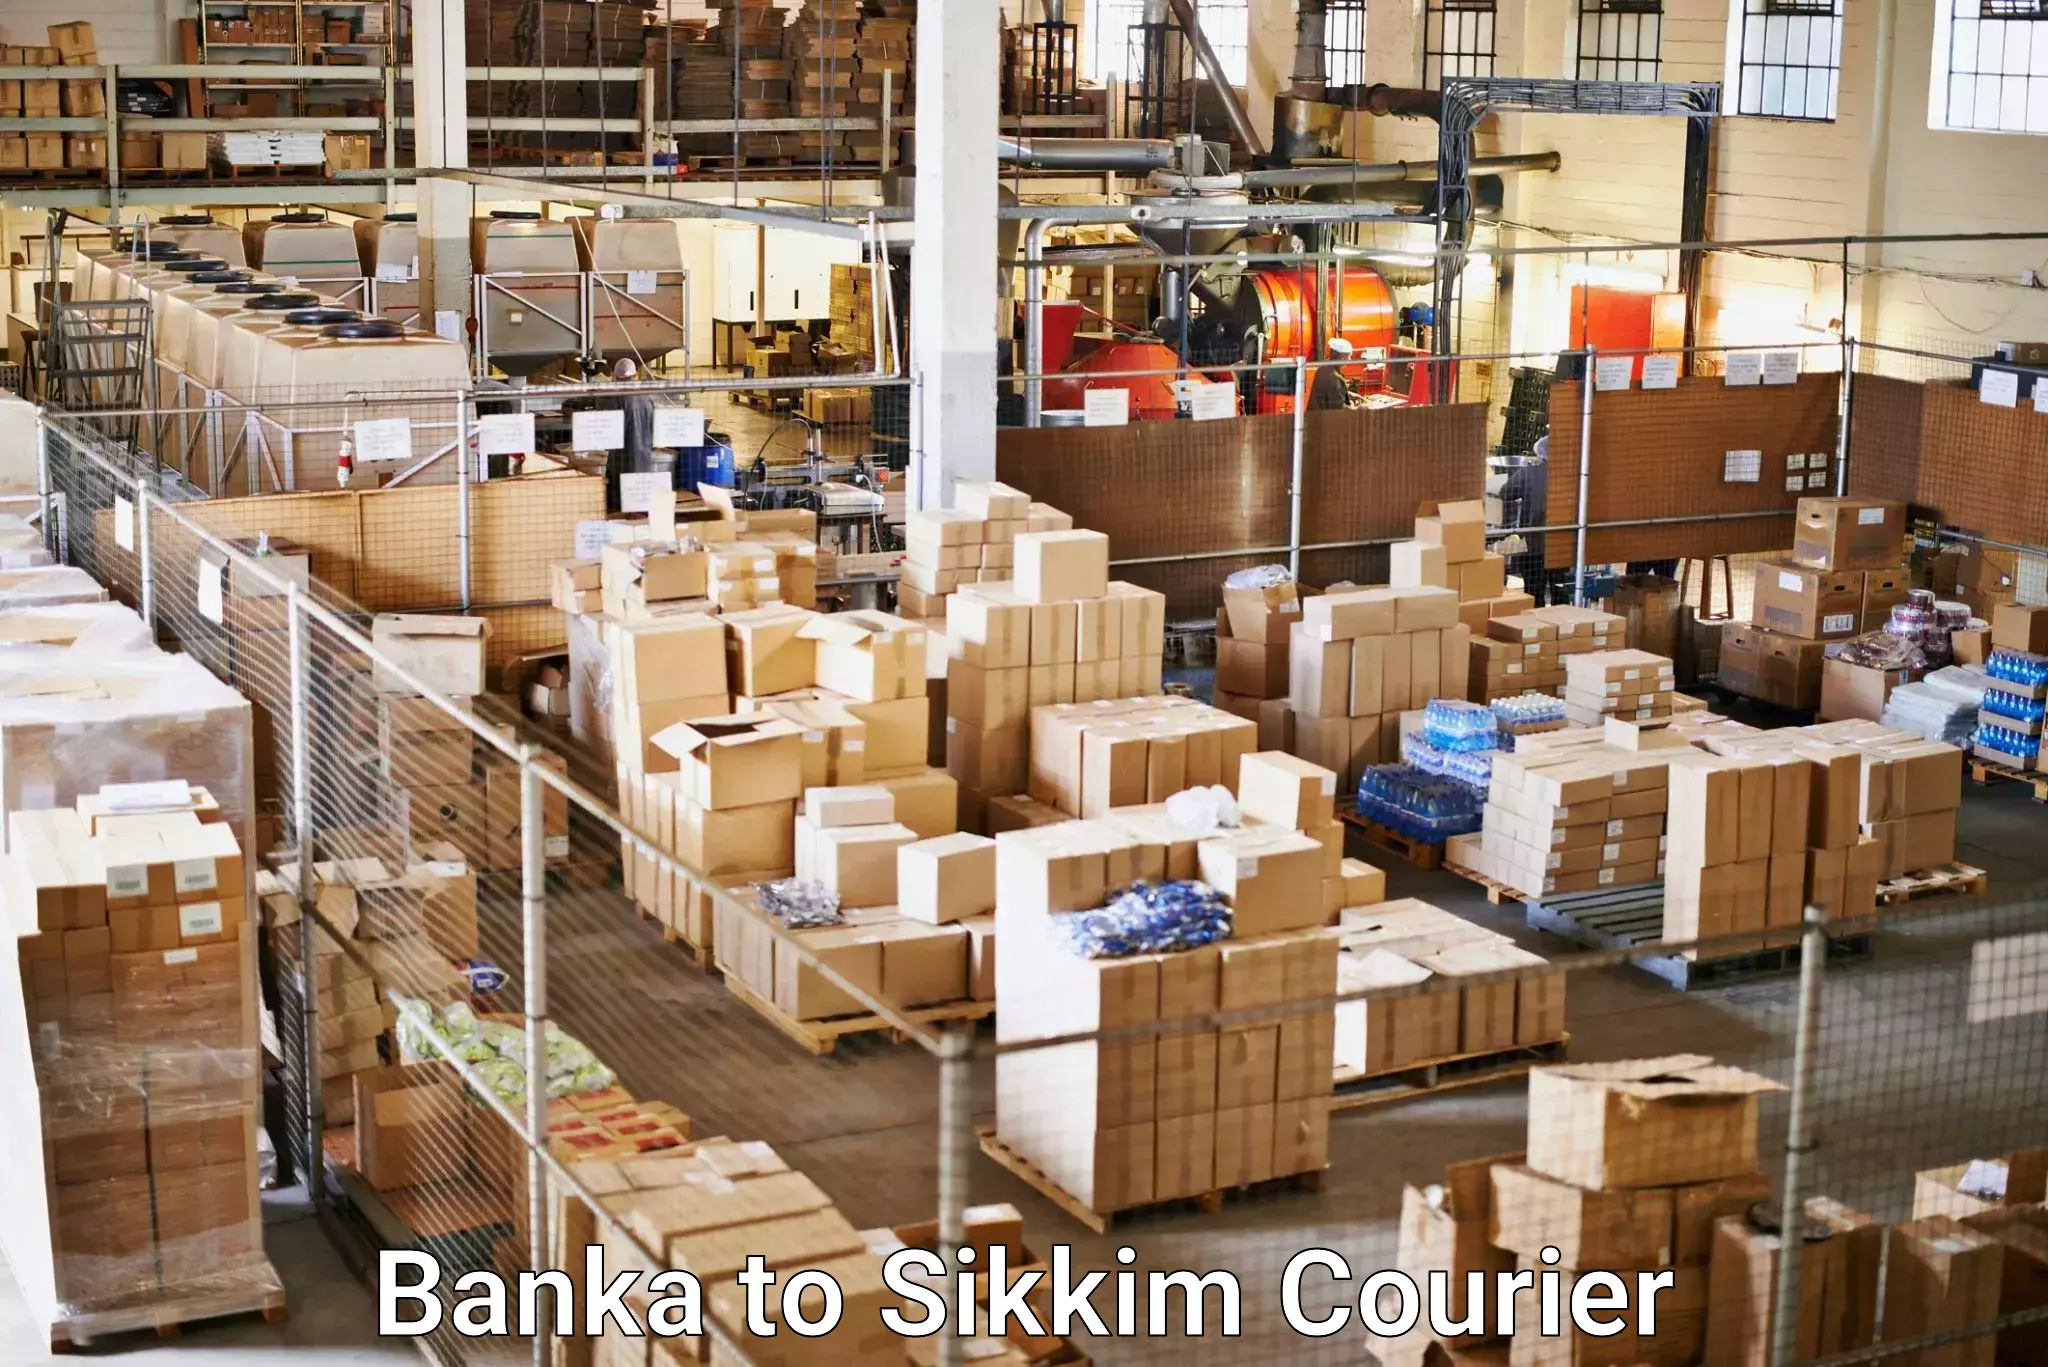 24/7 courier service Banka to Gangtok